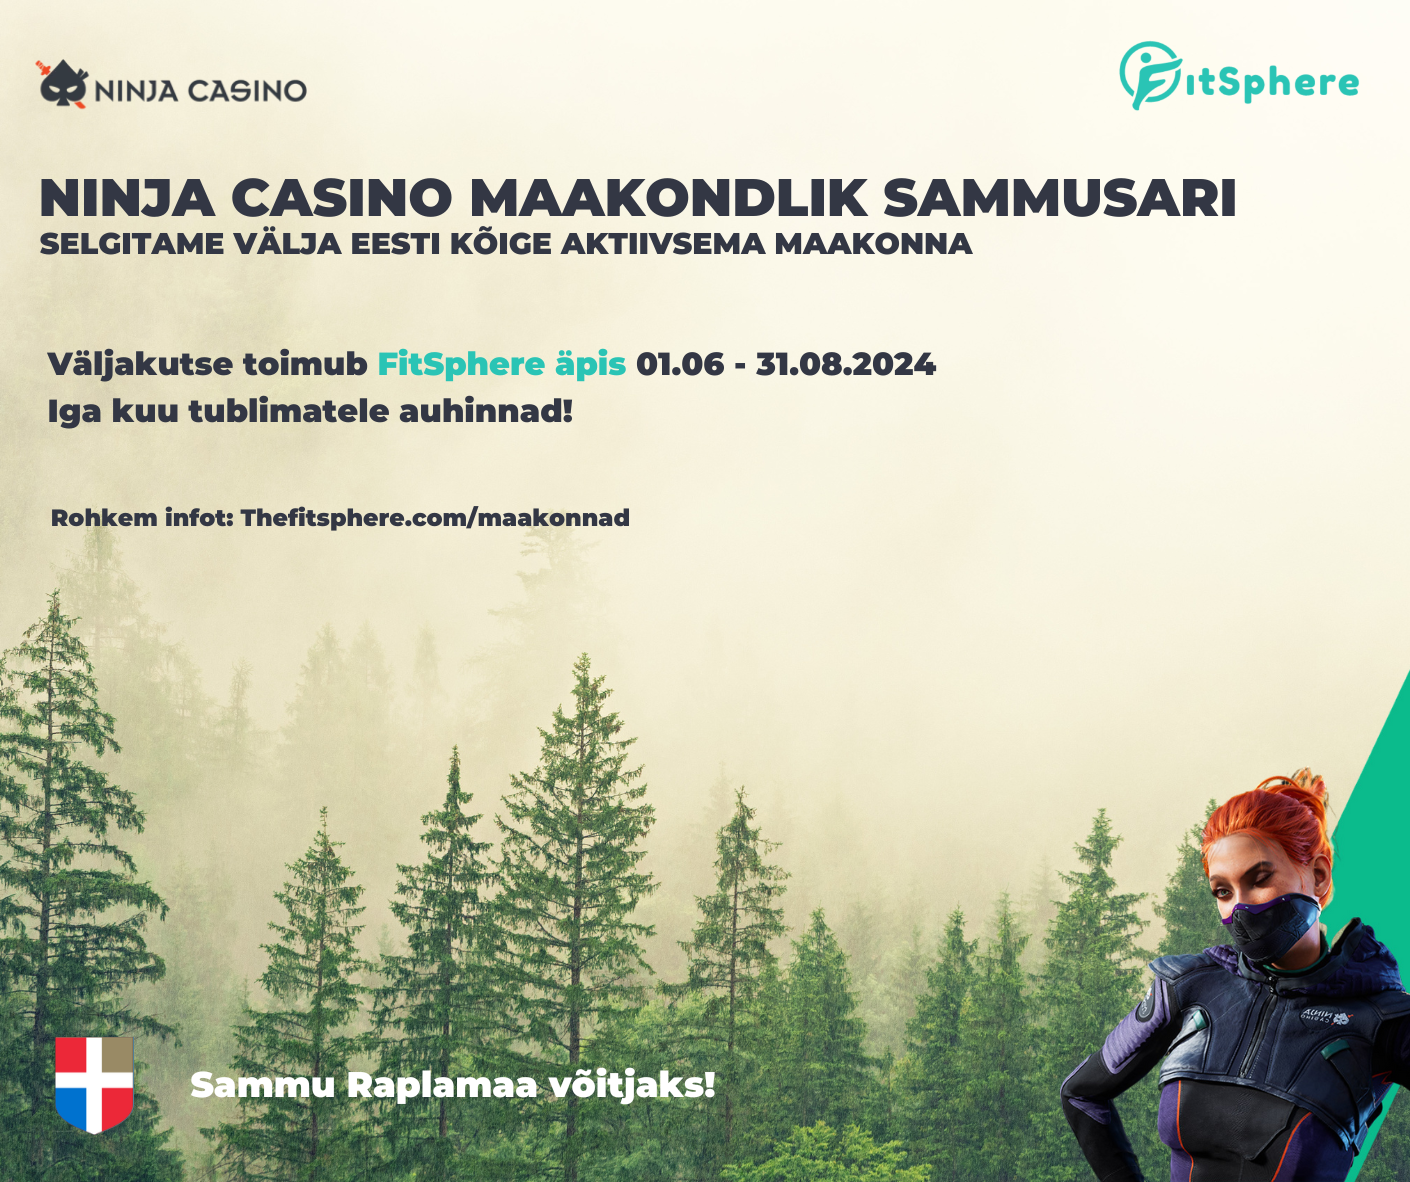 FitSphere koostöös Ninja Casino’ga on korraldamas Eesti maakondade vahelist sammuväljakutset.Väljakutse saab alguse juba 1. juunil ja kestab terve suve ehk kuni